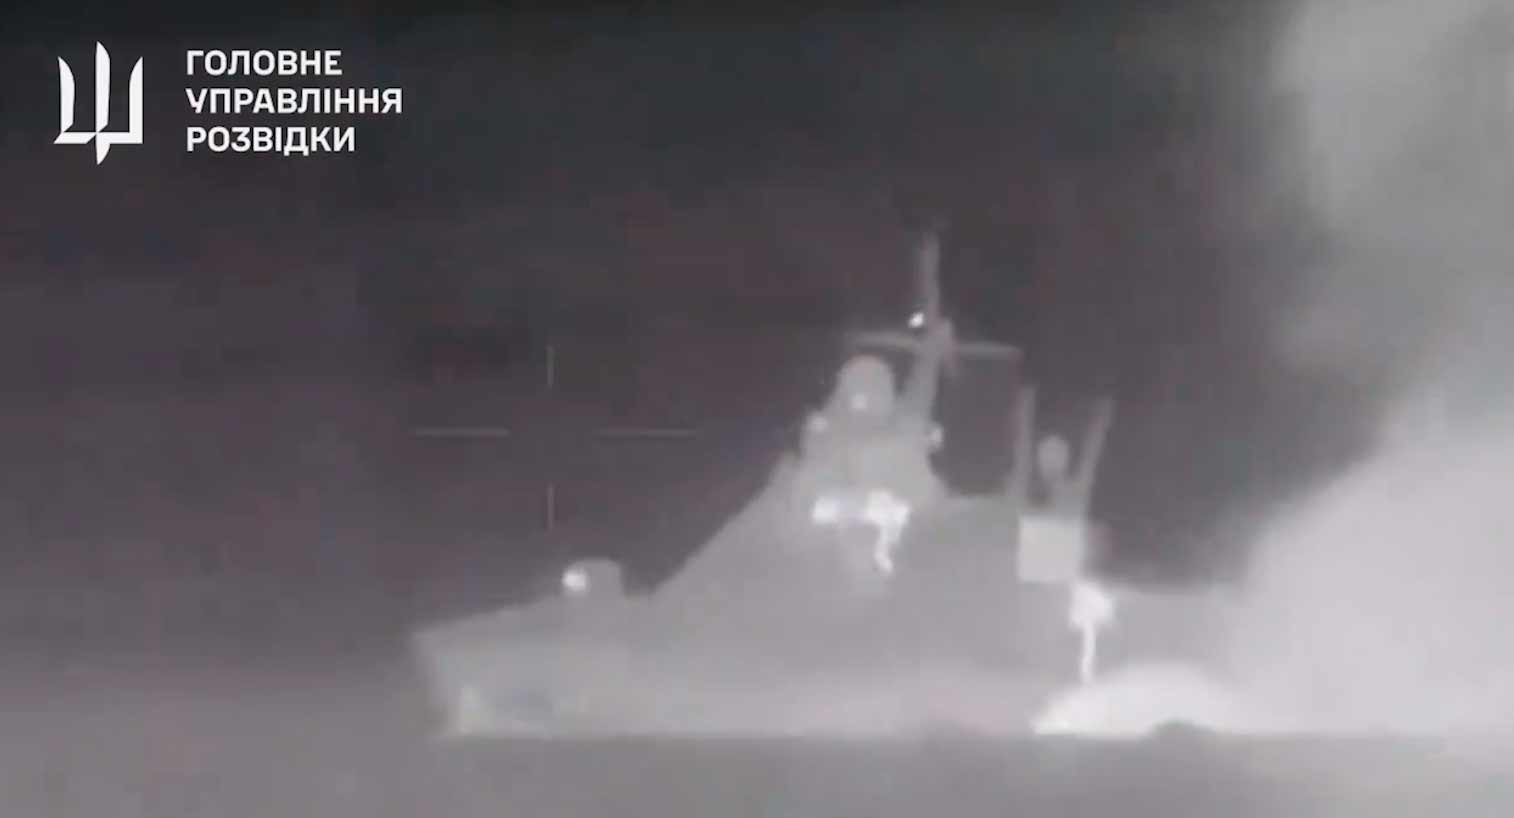 새로운 비디오가 러시아 선박 세르게이 코토프를 침몰시킨 폭발을 보여줍니다. Twitter @wartranslated 재현